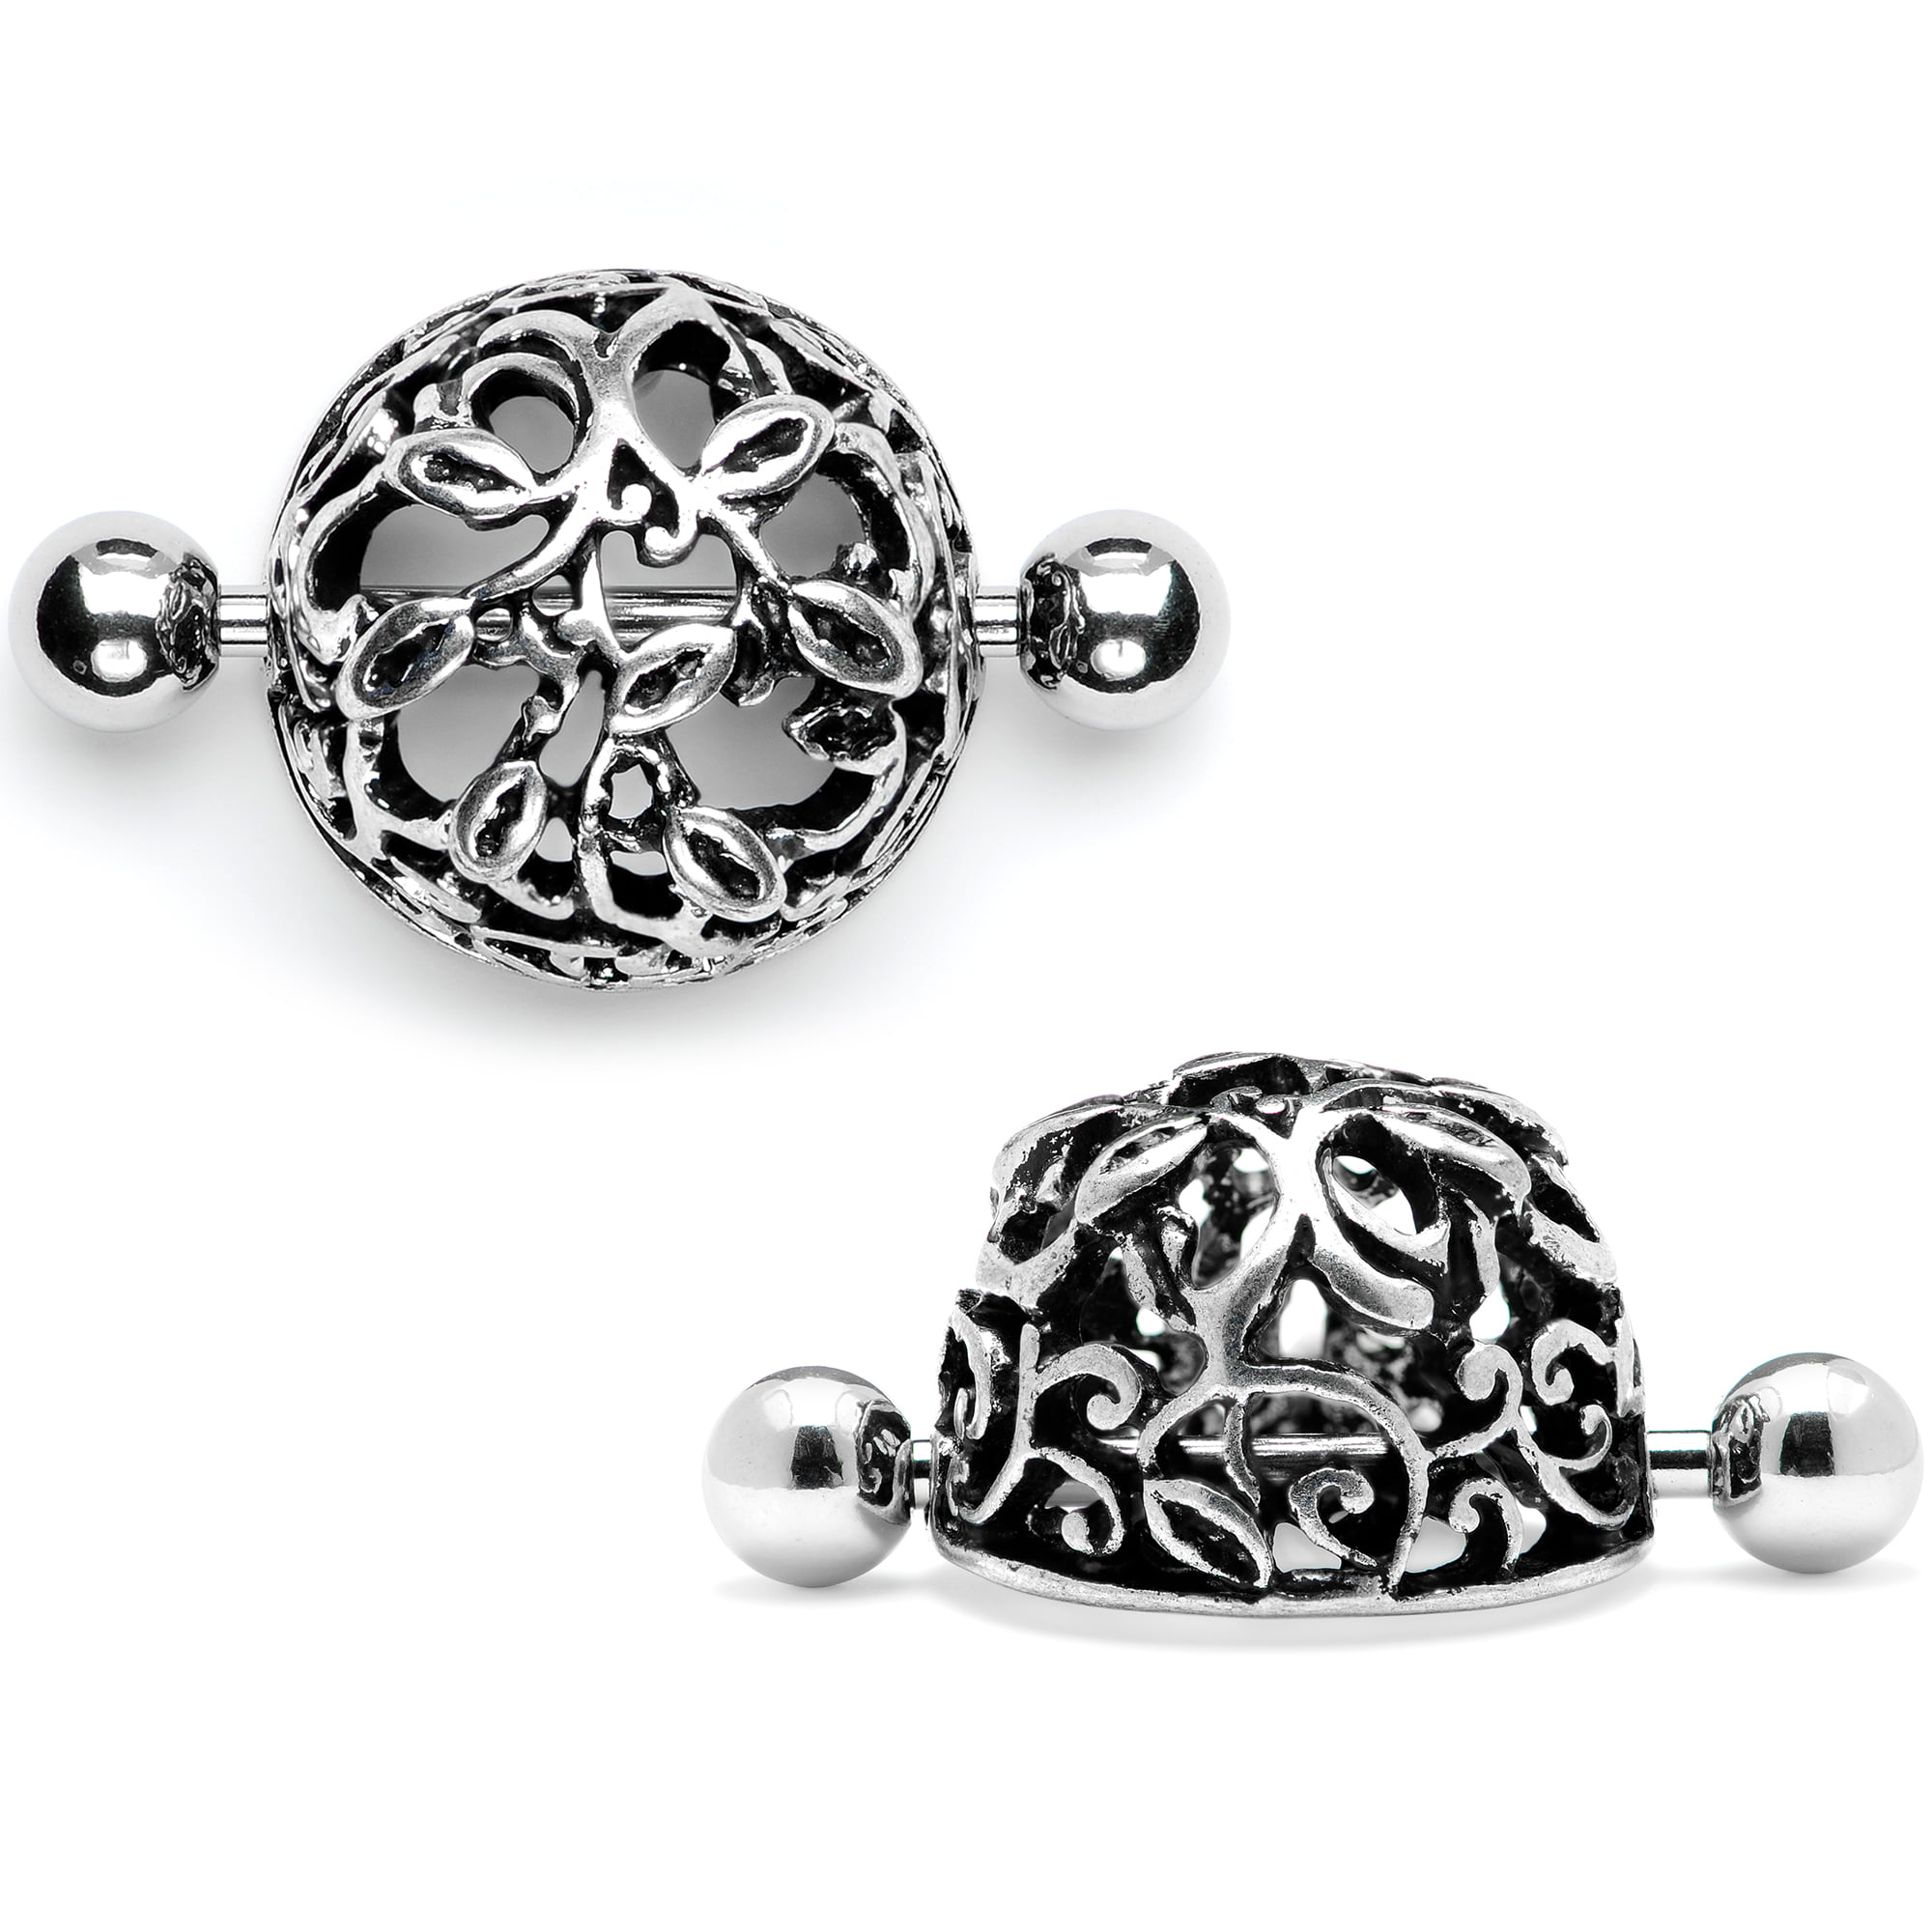 Pair of 14G Ornate Oval Nipple Piercing Rings Steel Barbells 